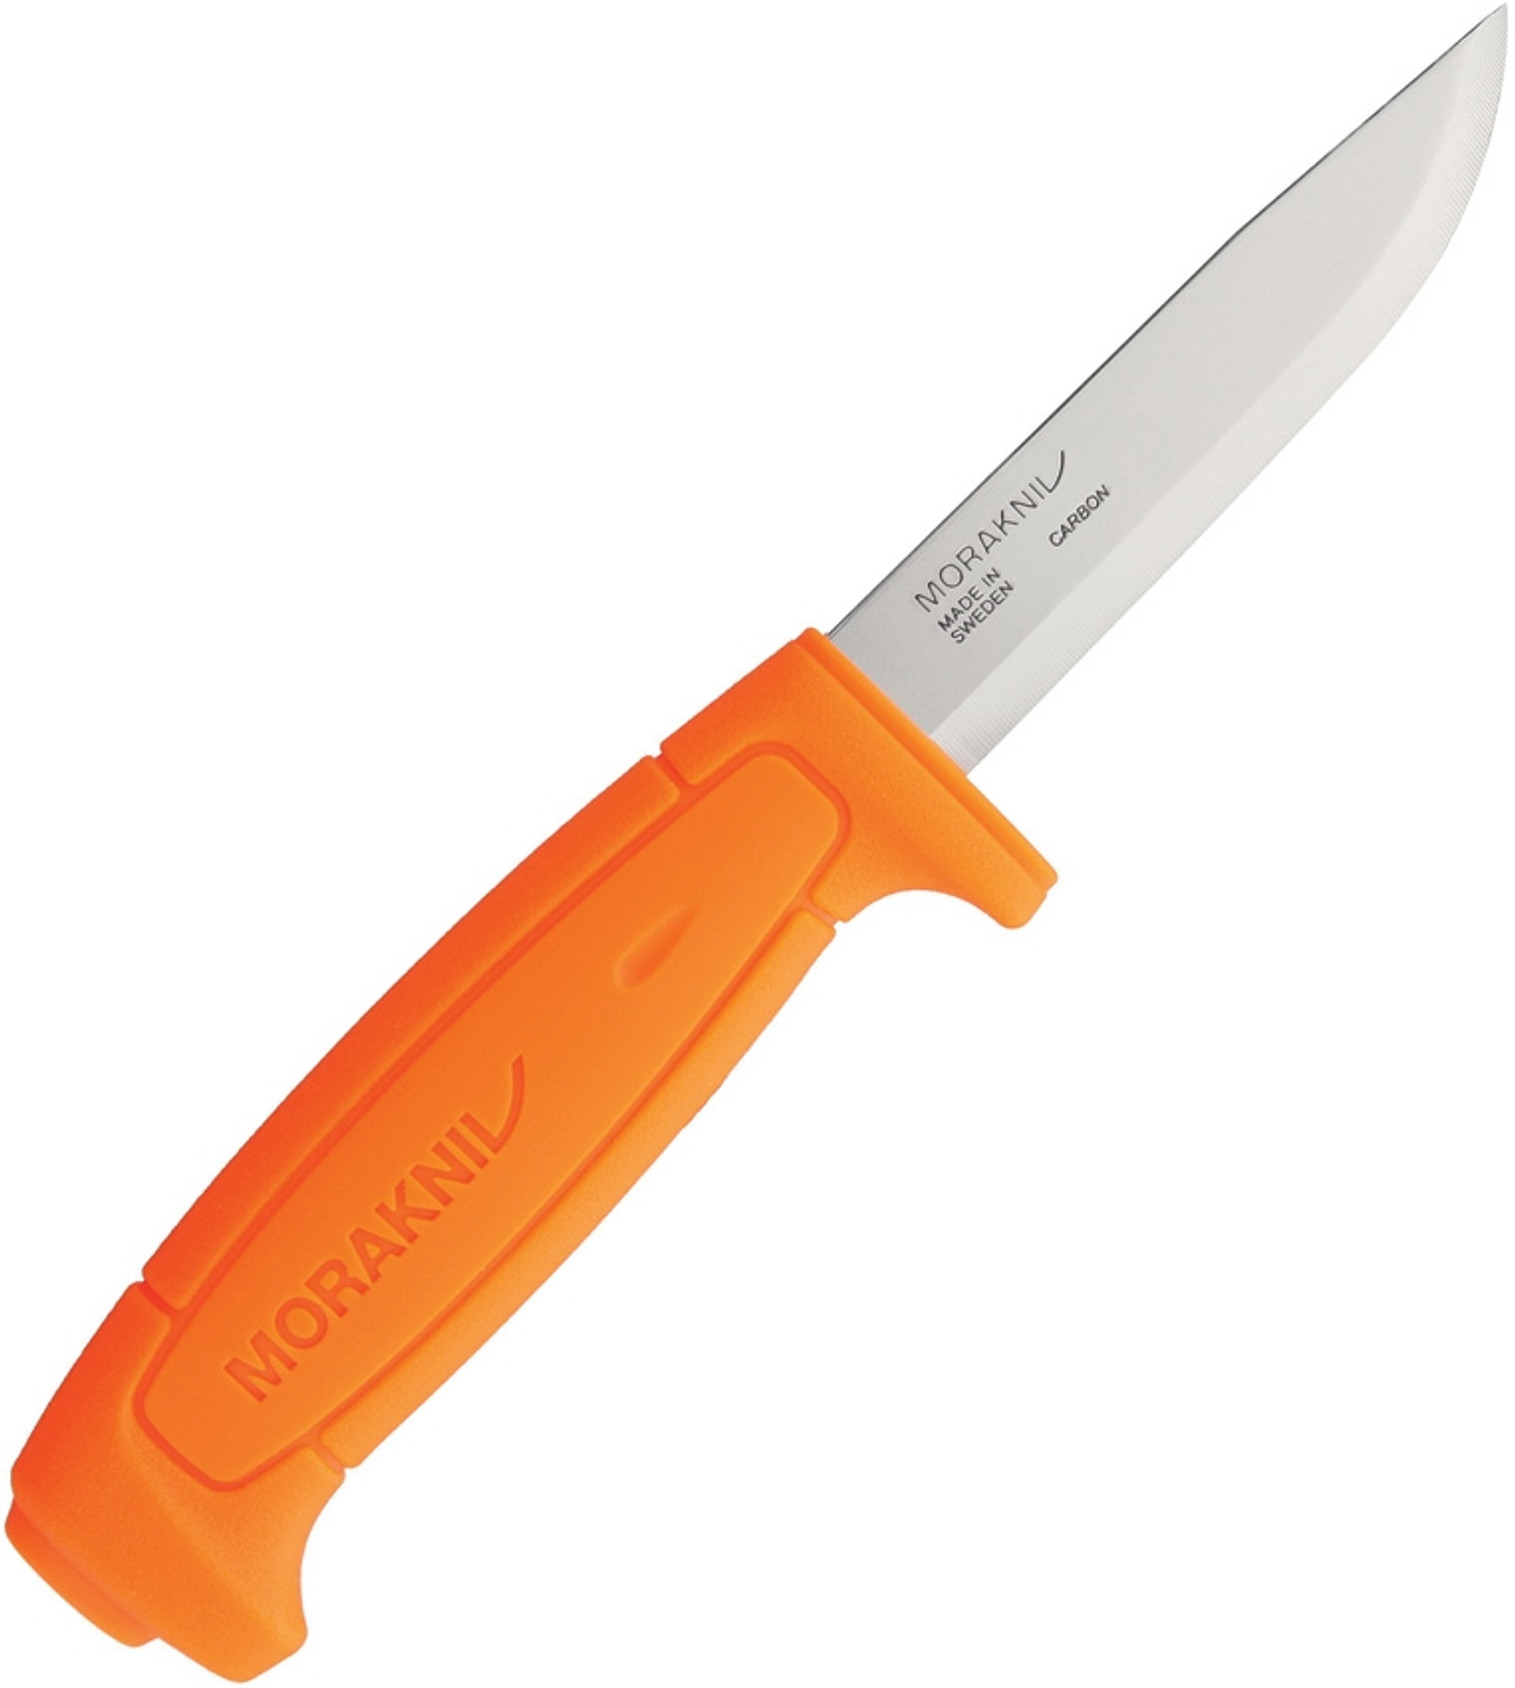 Basic 511 Fixed Blade Orange